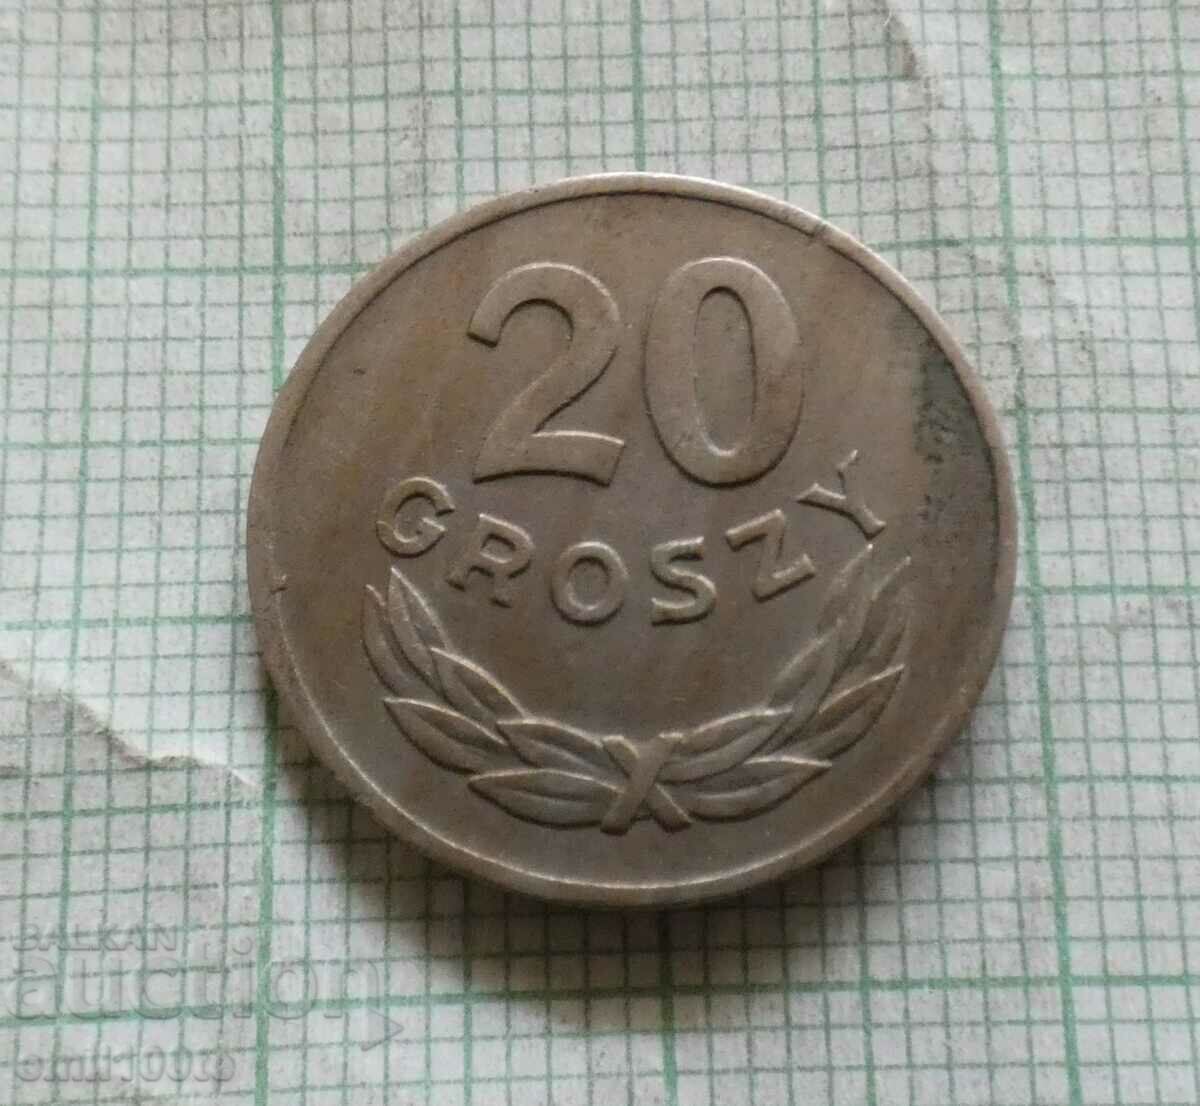 20 groszy 1949. Poland